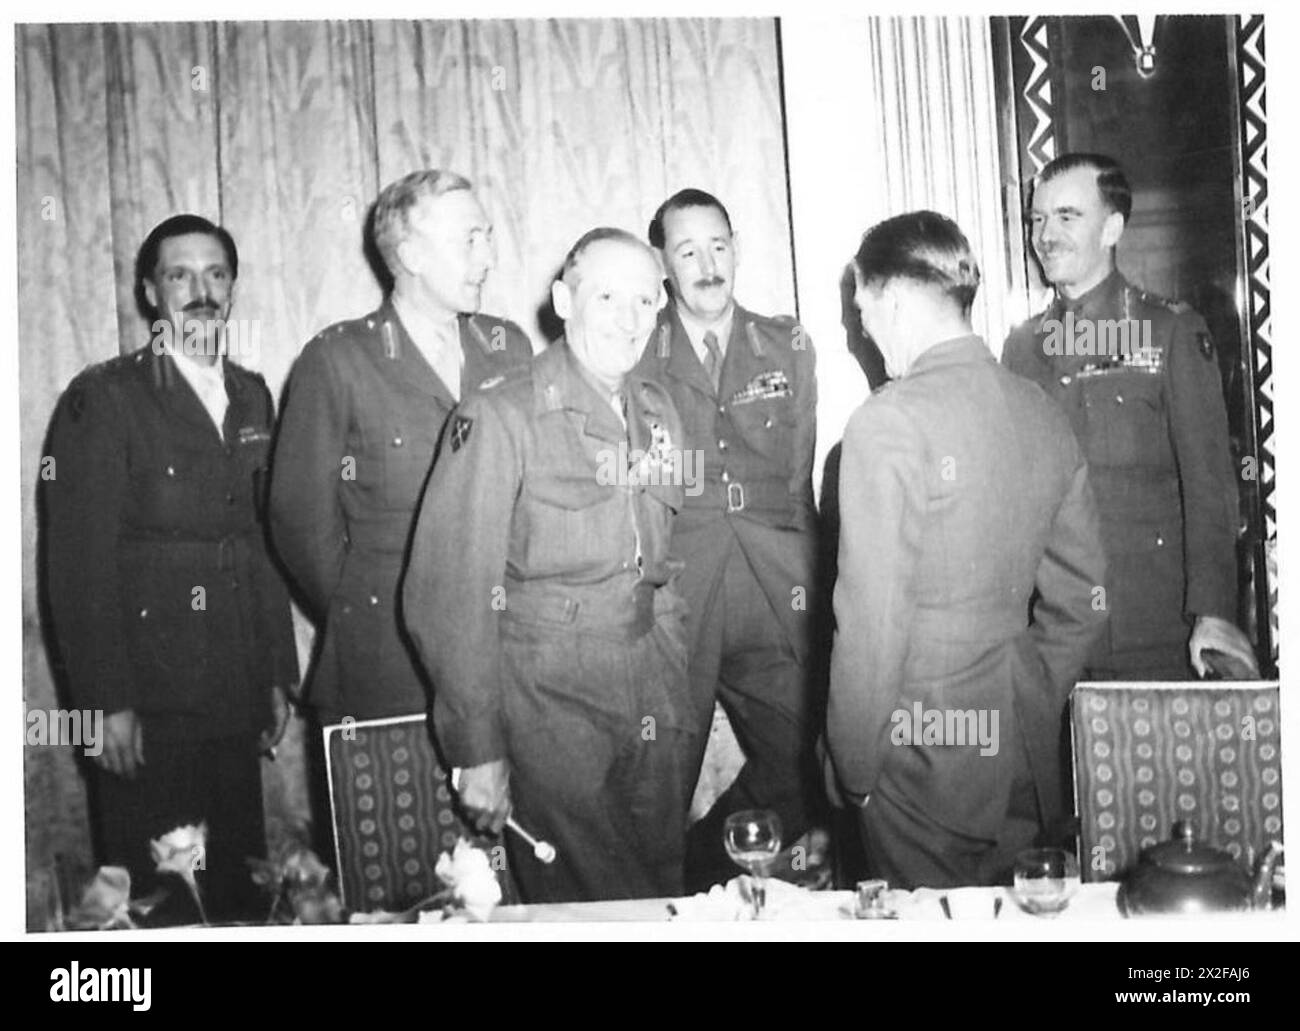 CENA EL ALAMEIN - Una serie di fotografie scattate durante la cena El Alamein tenutasi al Claridges Hotel, martedì 23 ottobre 1945, quando il feldmaresciallo Sir Bernard Montgomery presiedette e Winston Churchill fu uno degli ospiti dell'esercito britannico Foto Stock